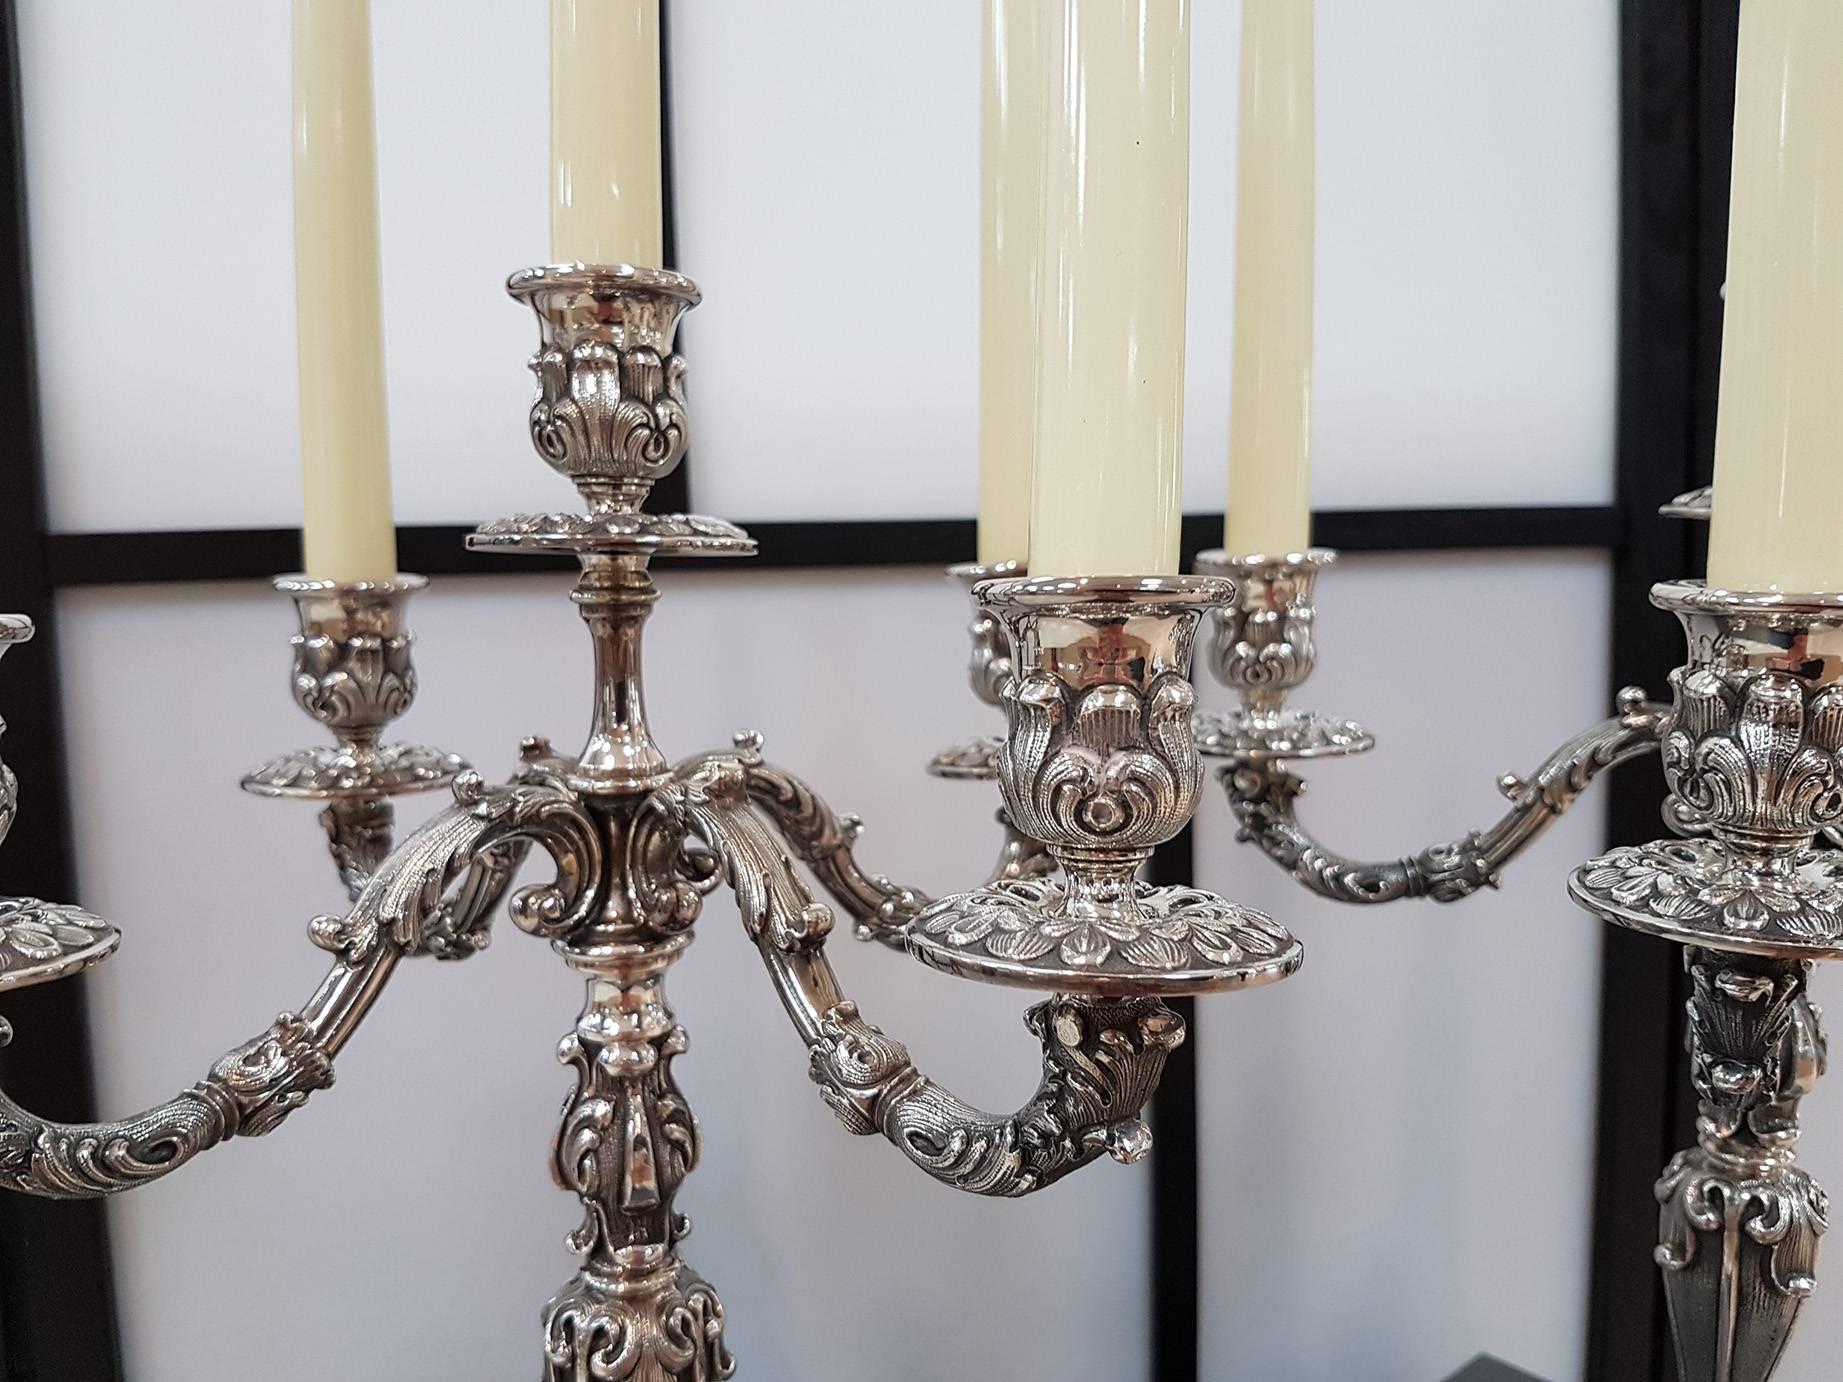 Pr. de candélabres à cinq lumières de style Barocco revival italien. 
Ces chandeliers sont le résultat de l'excellence de l'artisanat italien
qui soigne à la perfection les détails et les équilibres de conception

5 300 grammes.